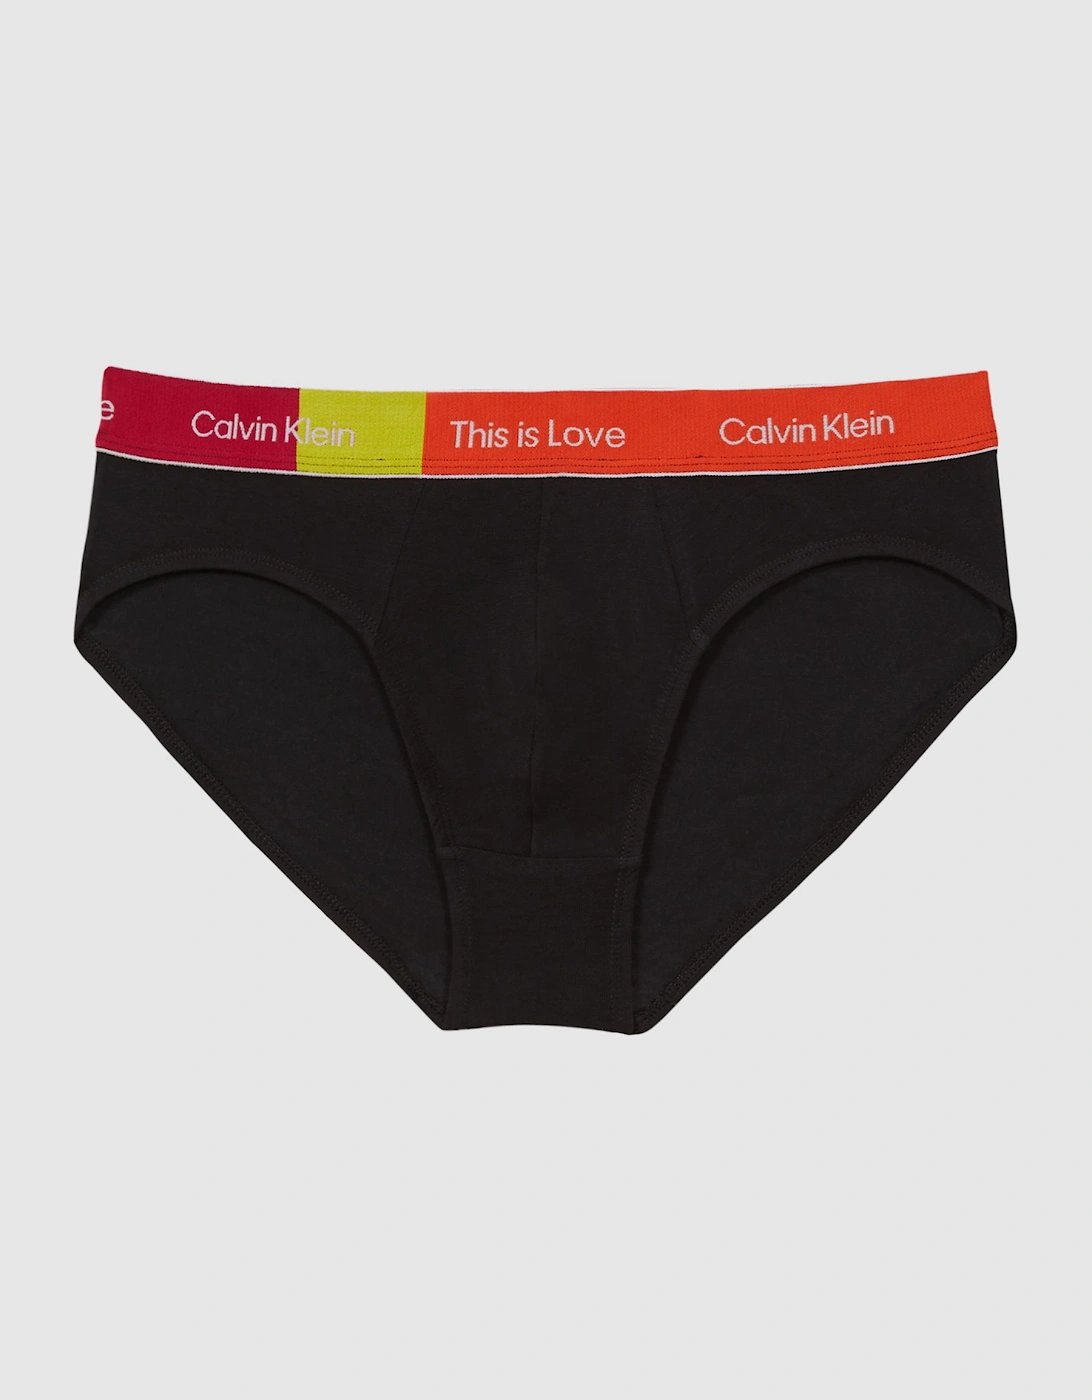 Calvin Klein Underwear This Is Love Briefs, 2 of 1